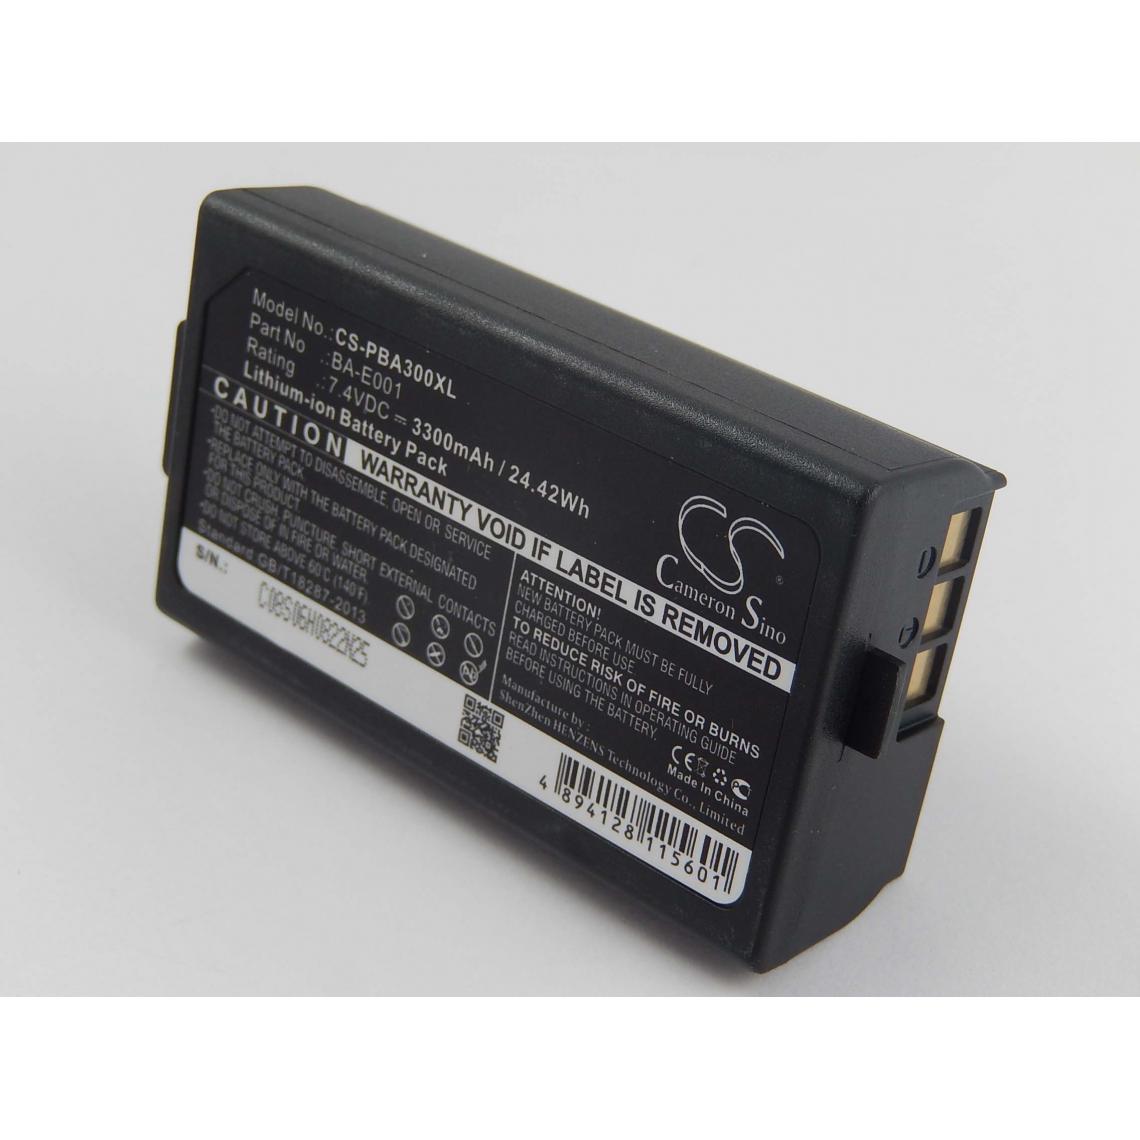 Vhbw - vhbw Batterie compatible avec Sonel PAT-10, PAT-2 imprimante, scanner, imprimante d'étiquettes (3300mAh, 7,4V, Li-ion) - Imprimante Jet d'encre